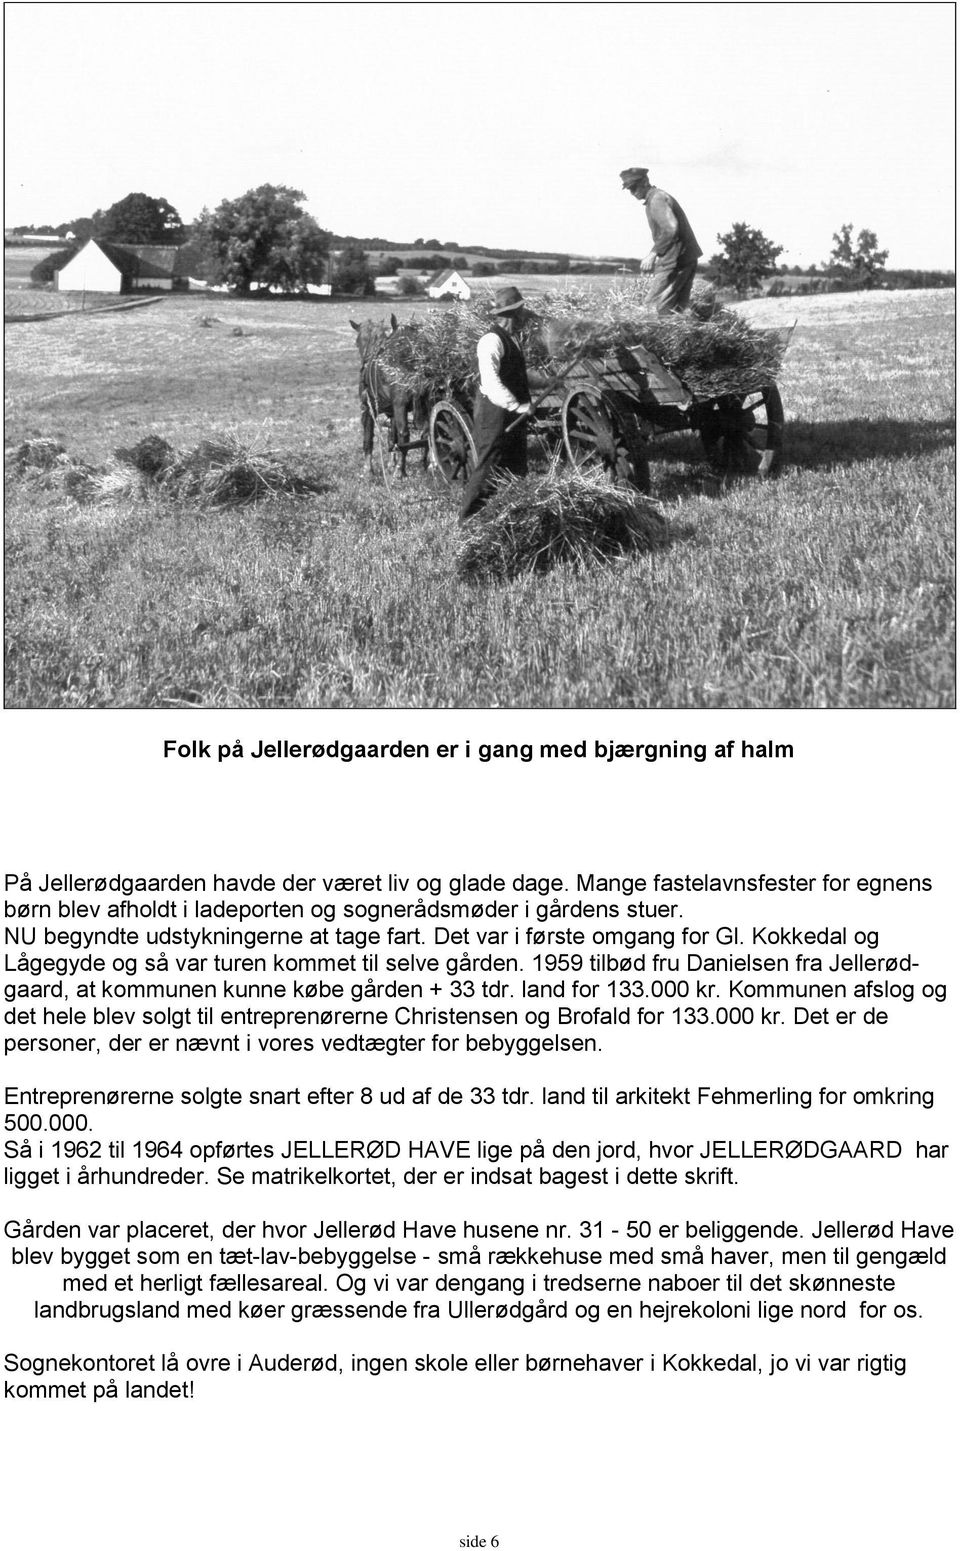 Kokkedal og Lågegyde og så var turen kommet til selve gården. 1959 tilbød fru Danielsen fra Jellerødgaard, at kommunen kunne købe gården + 33 tdr. land for 133.000 kr.